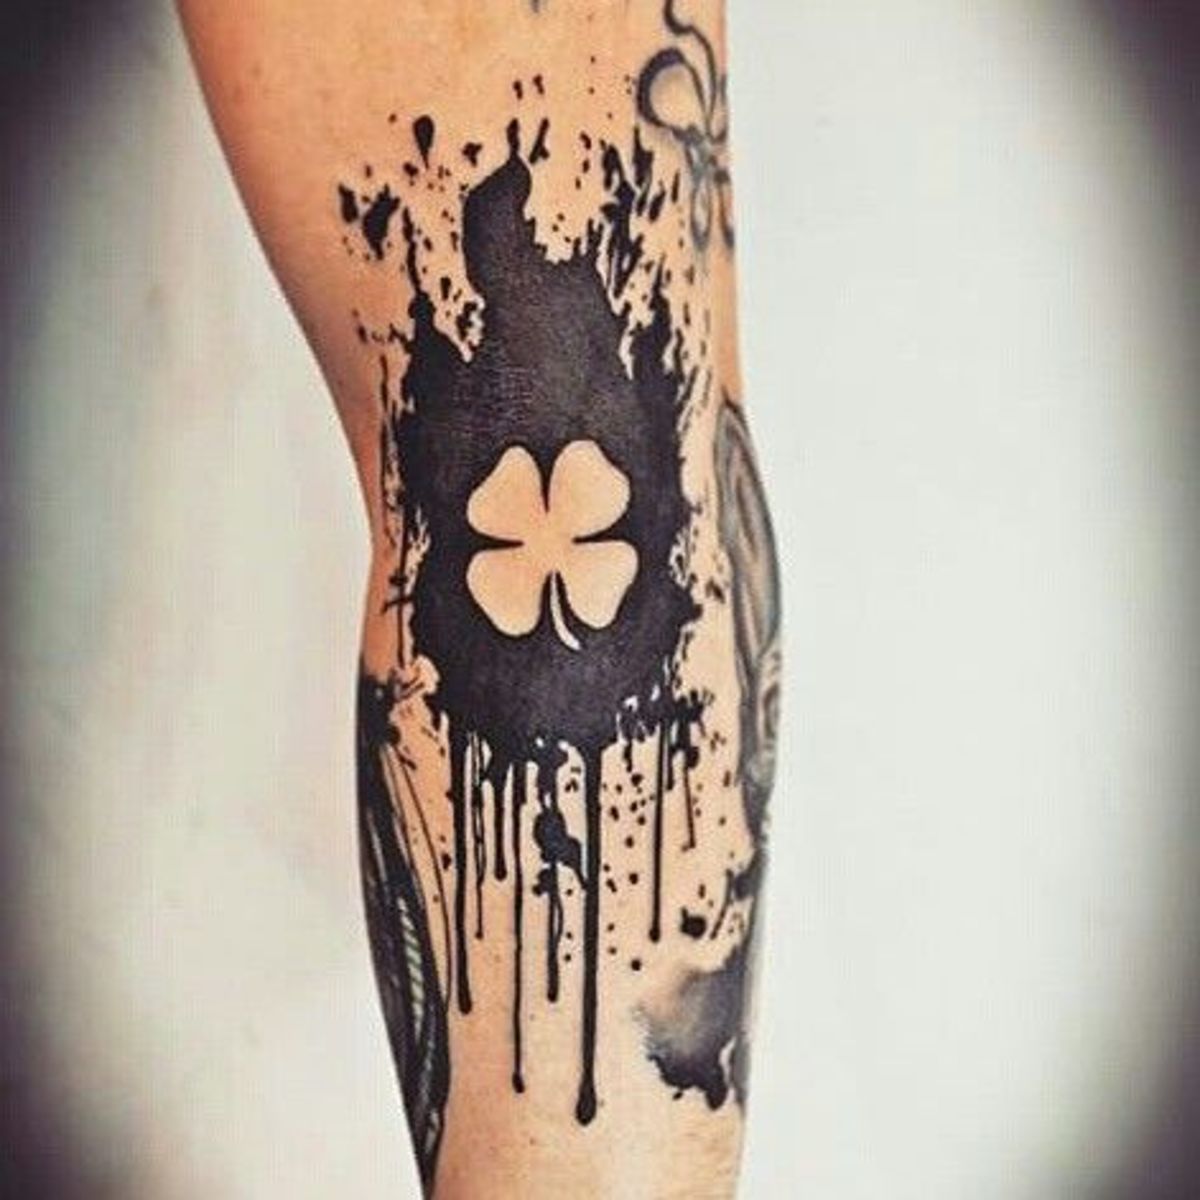 Irische Tattoos, Keltische Tattoos, Vierblättriges Kleeblatt Tattoos, St. Patricks Day, St Patricks Day Tattoos, Claddagh Tattoos, Wolf Tattoos, Irische Tattoo Inspiration, Kobold Tattoos, Gälische Tattoos